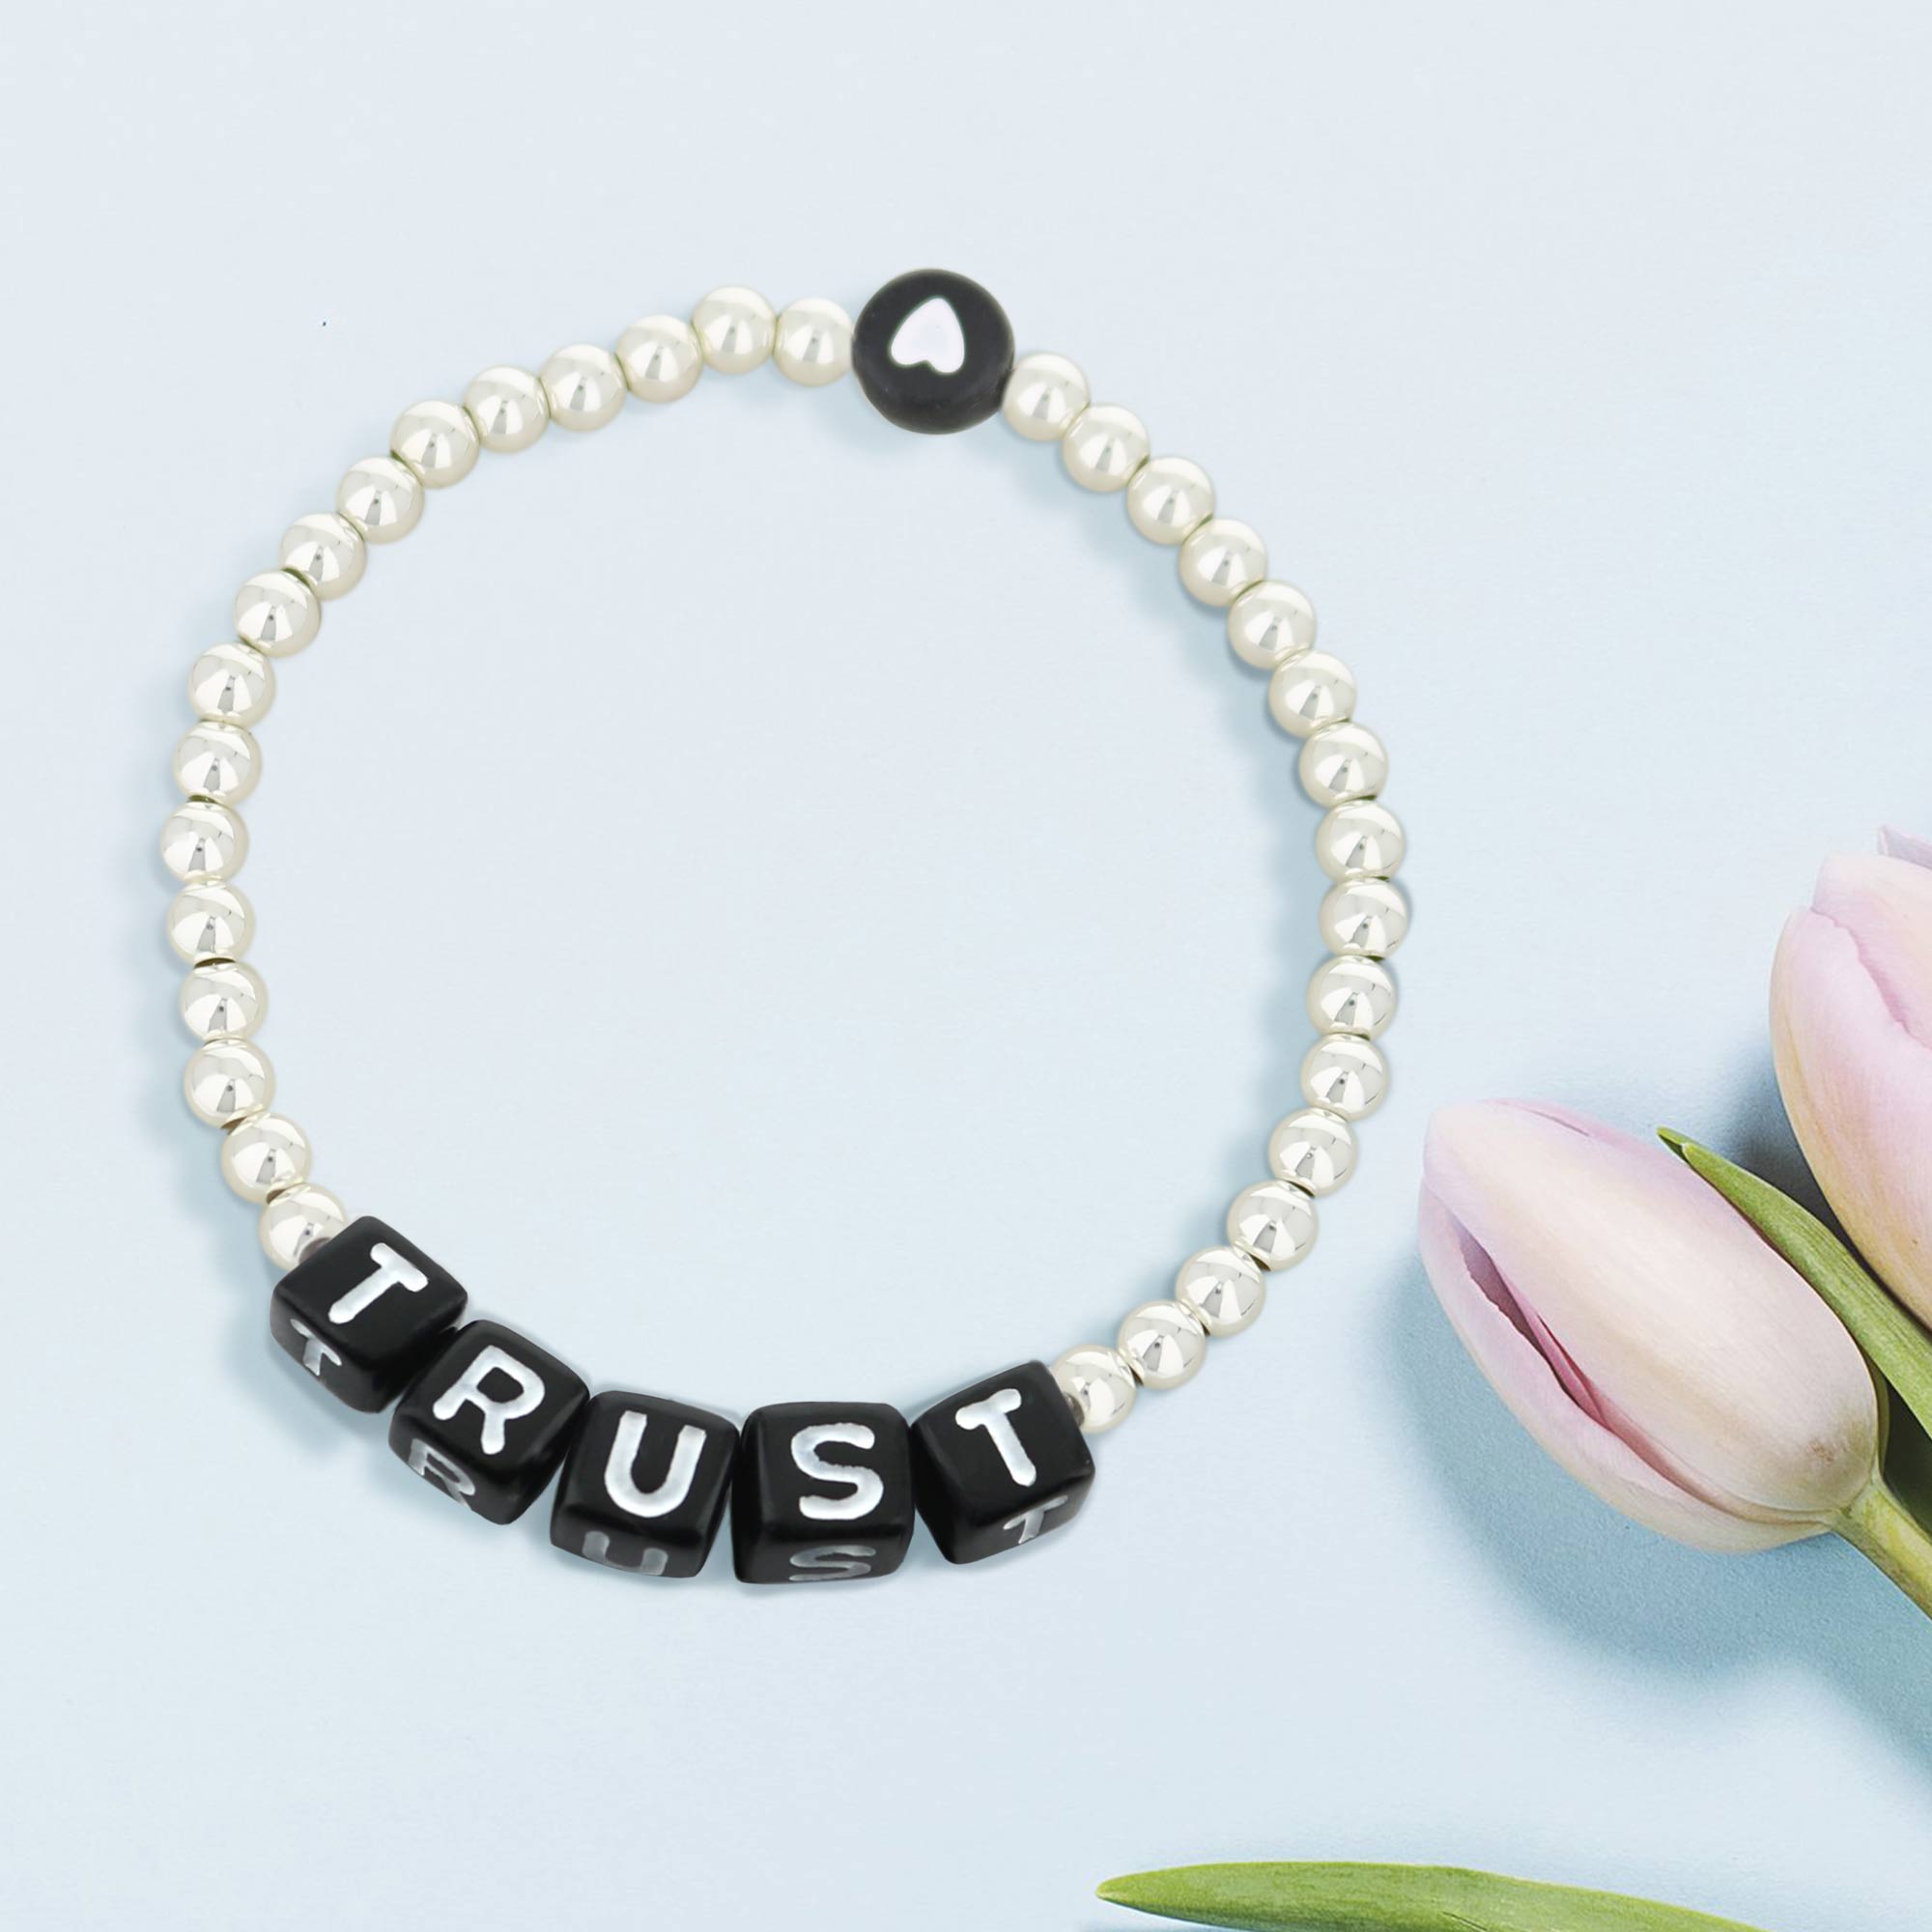 Lorelai Trust Silver 4mm Beads Bracelet